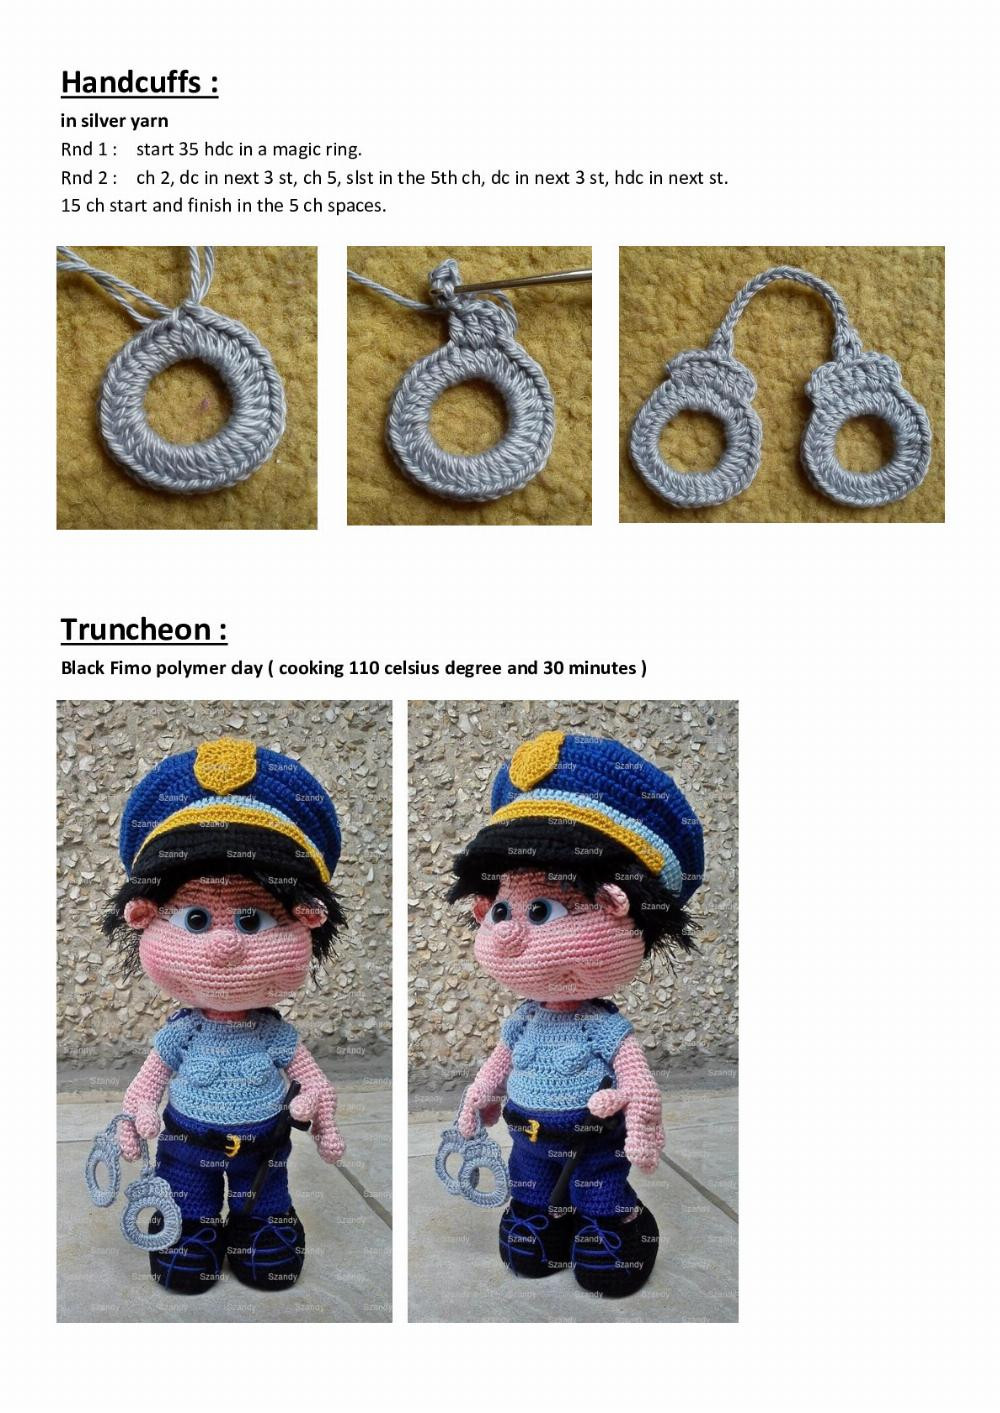 Police Elf Boy crochet pattern